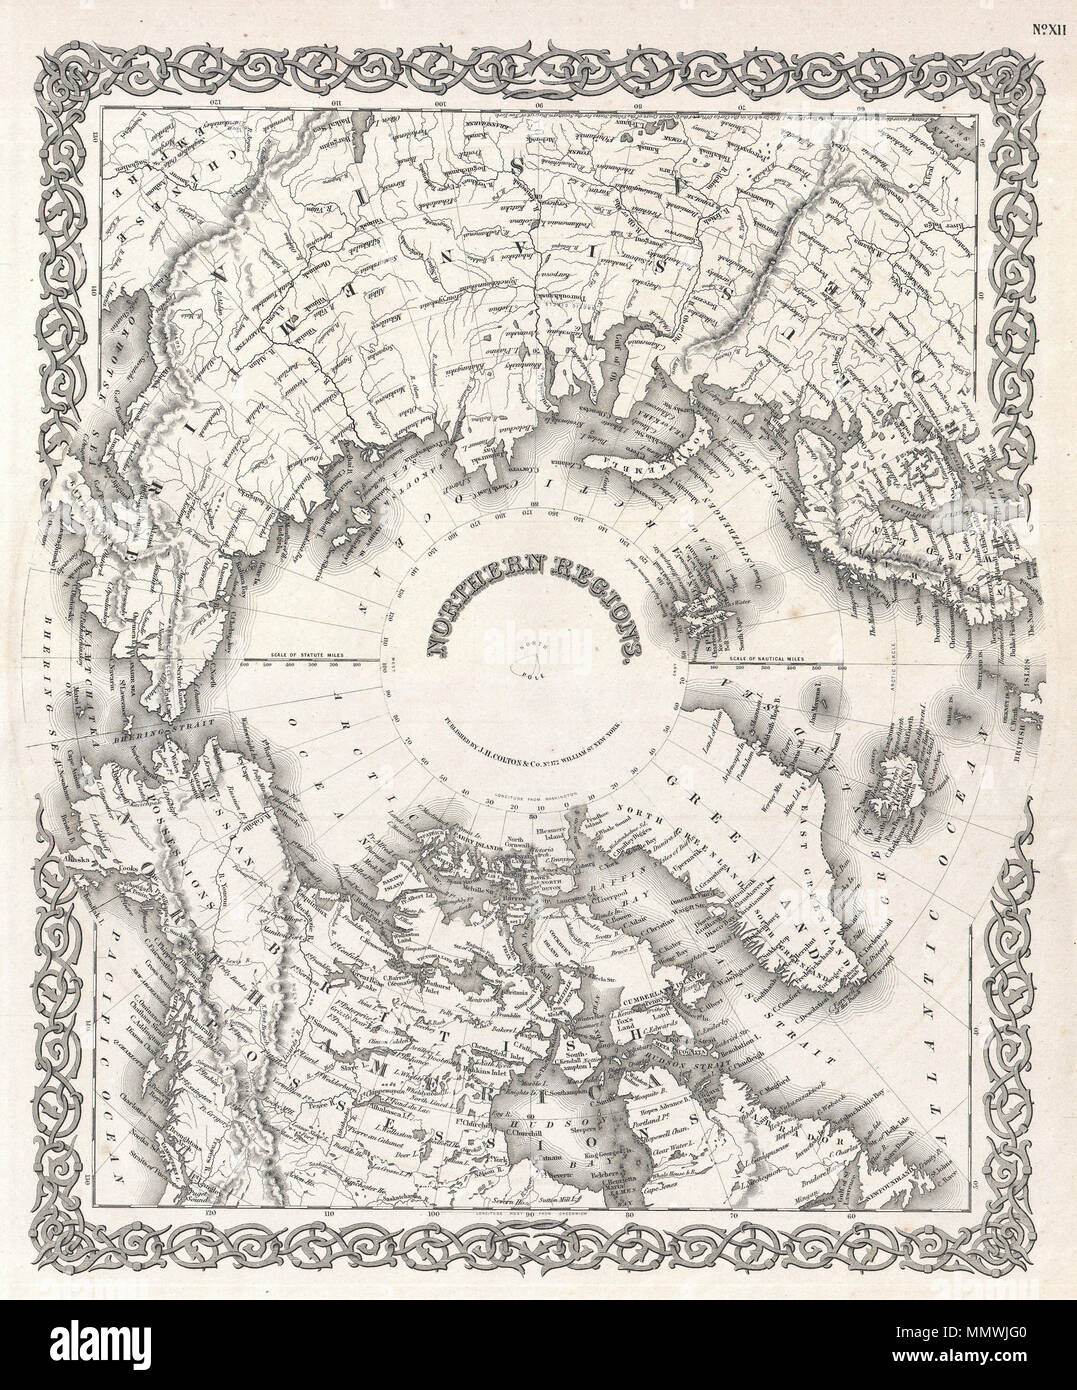 . Anglais : ce rare carte colorée à la main est une plaque de cuivre gravure, datant de 1855 par le célèbre cartographe américain du xixe siècle, J. H. Colton. Il s'agit d'une représentation du pôle nord et est officiellement intitulée "Les régions du Nord". C'est une rare et historiquement importants carte comme les régions polaires étaient encore relativement inexploré lorsqu'elle a été rédigée. Les passages du Nord-Ouest et du Nord-Est sont délimités et la plupart des littoraux d'Amérique du Nord, en Europe et en Asie sont indiqués avec précision relative. Publié par J. H. Colton's 172 William Street, à New York. Les régions du nord.. 1855 (daté). 1 Banque D'Images